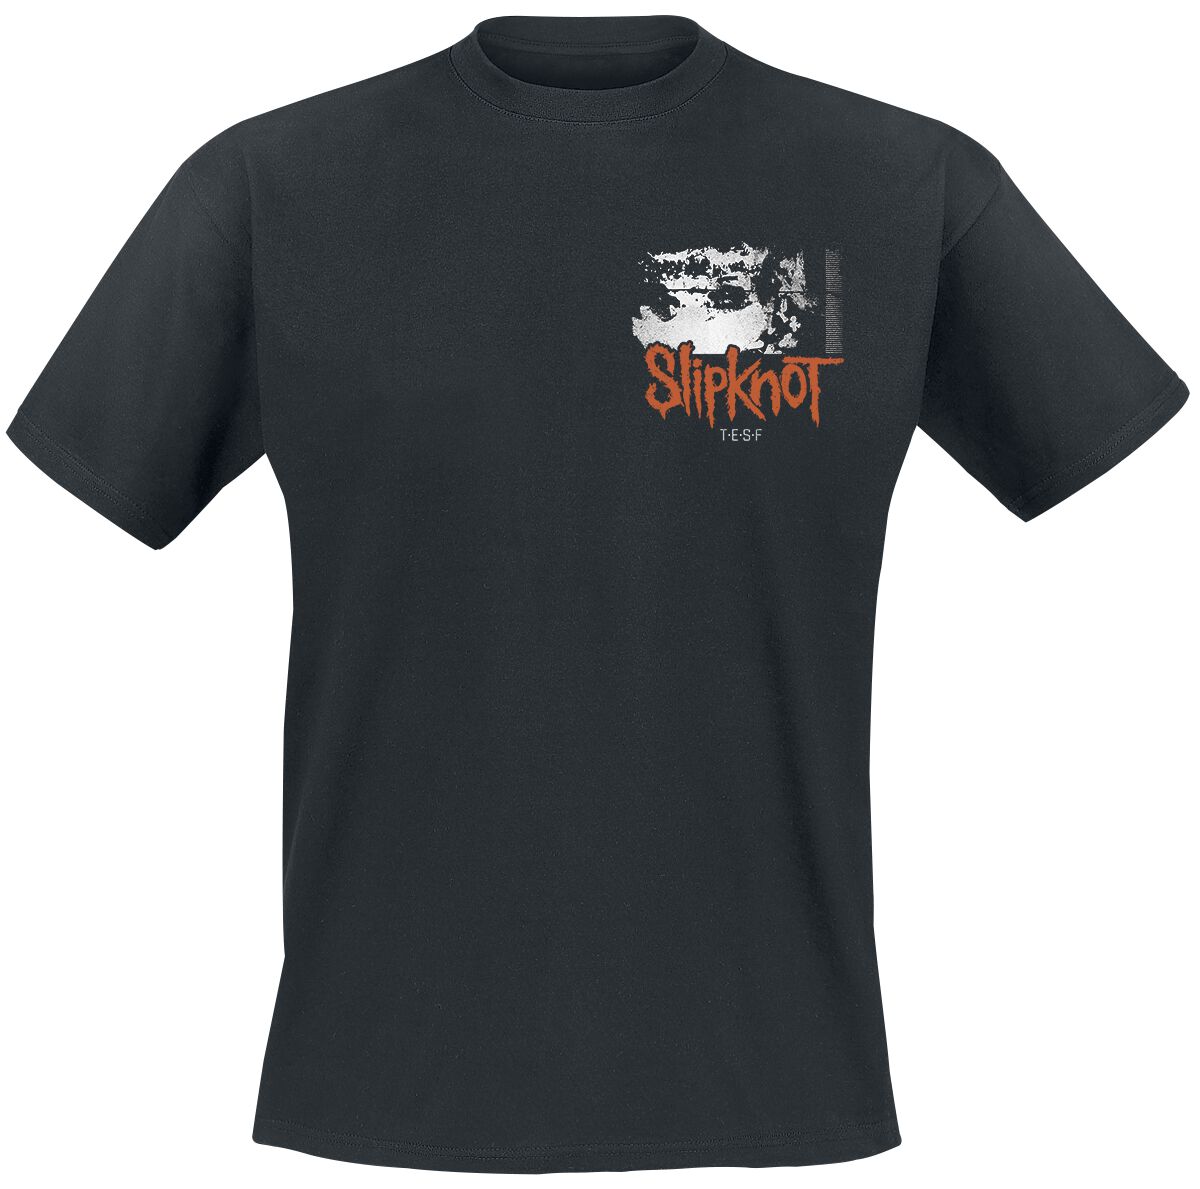 Slipknot T-Shirt - The End, So Far Tracklist - S bis 3XL - für Männer - Größe XL - schwarz  - Lizenziertes Merchandise!